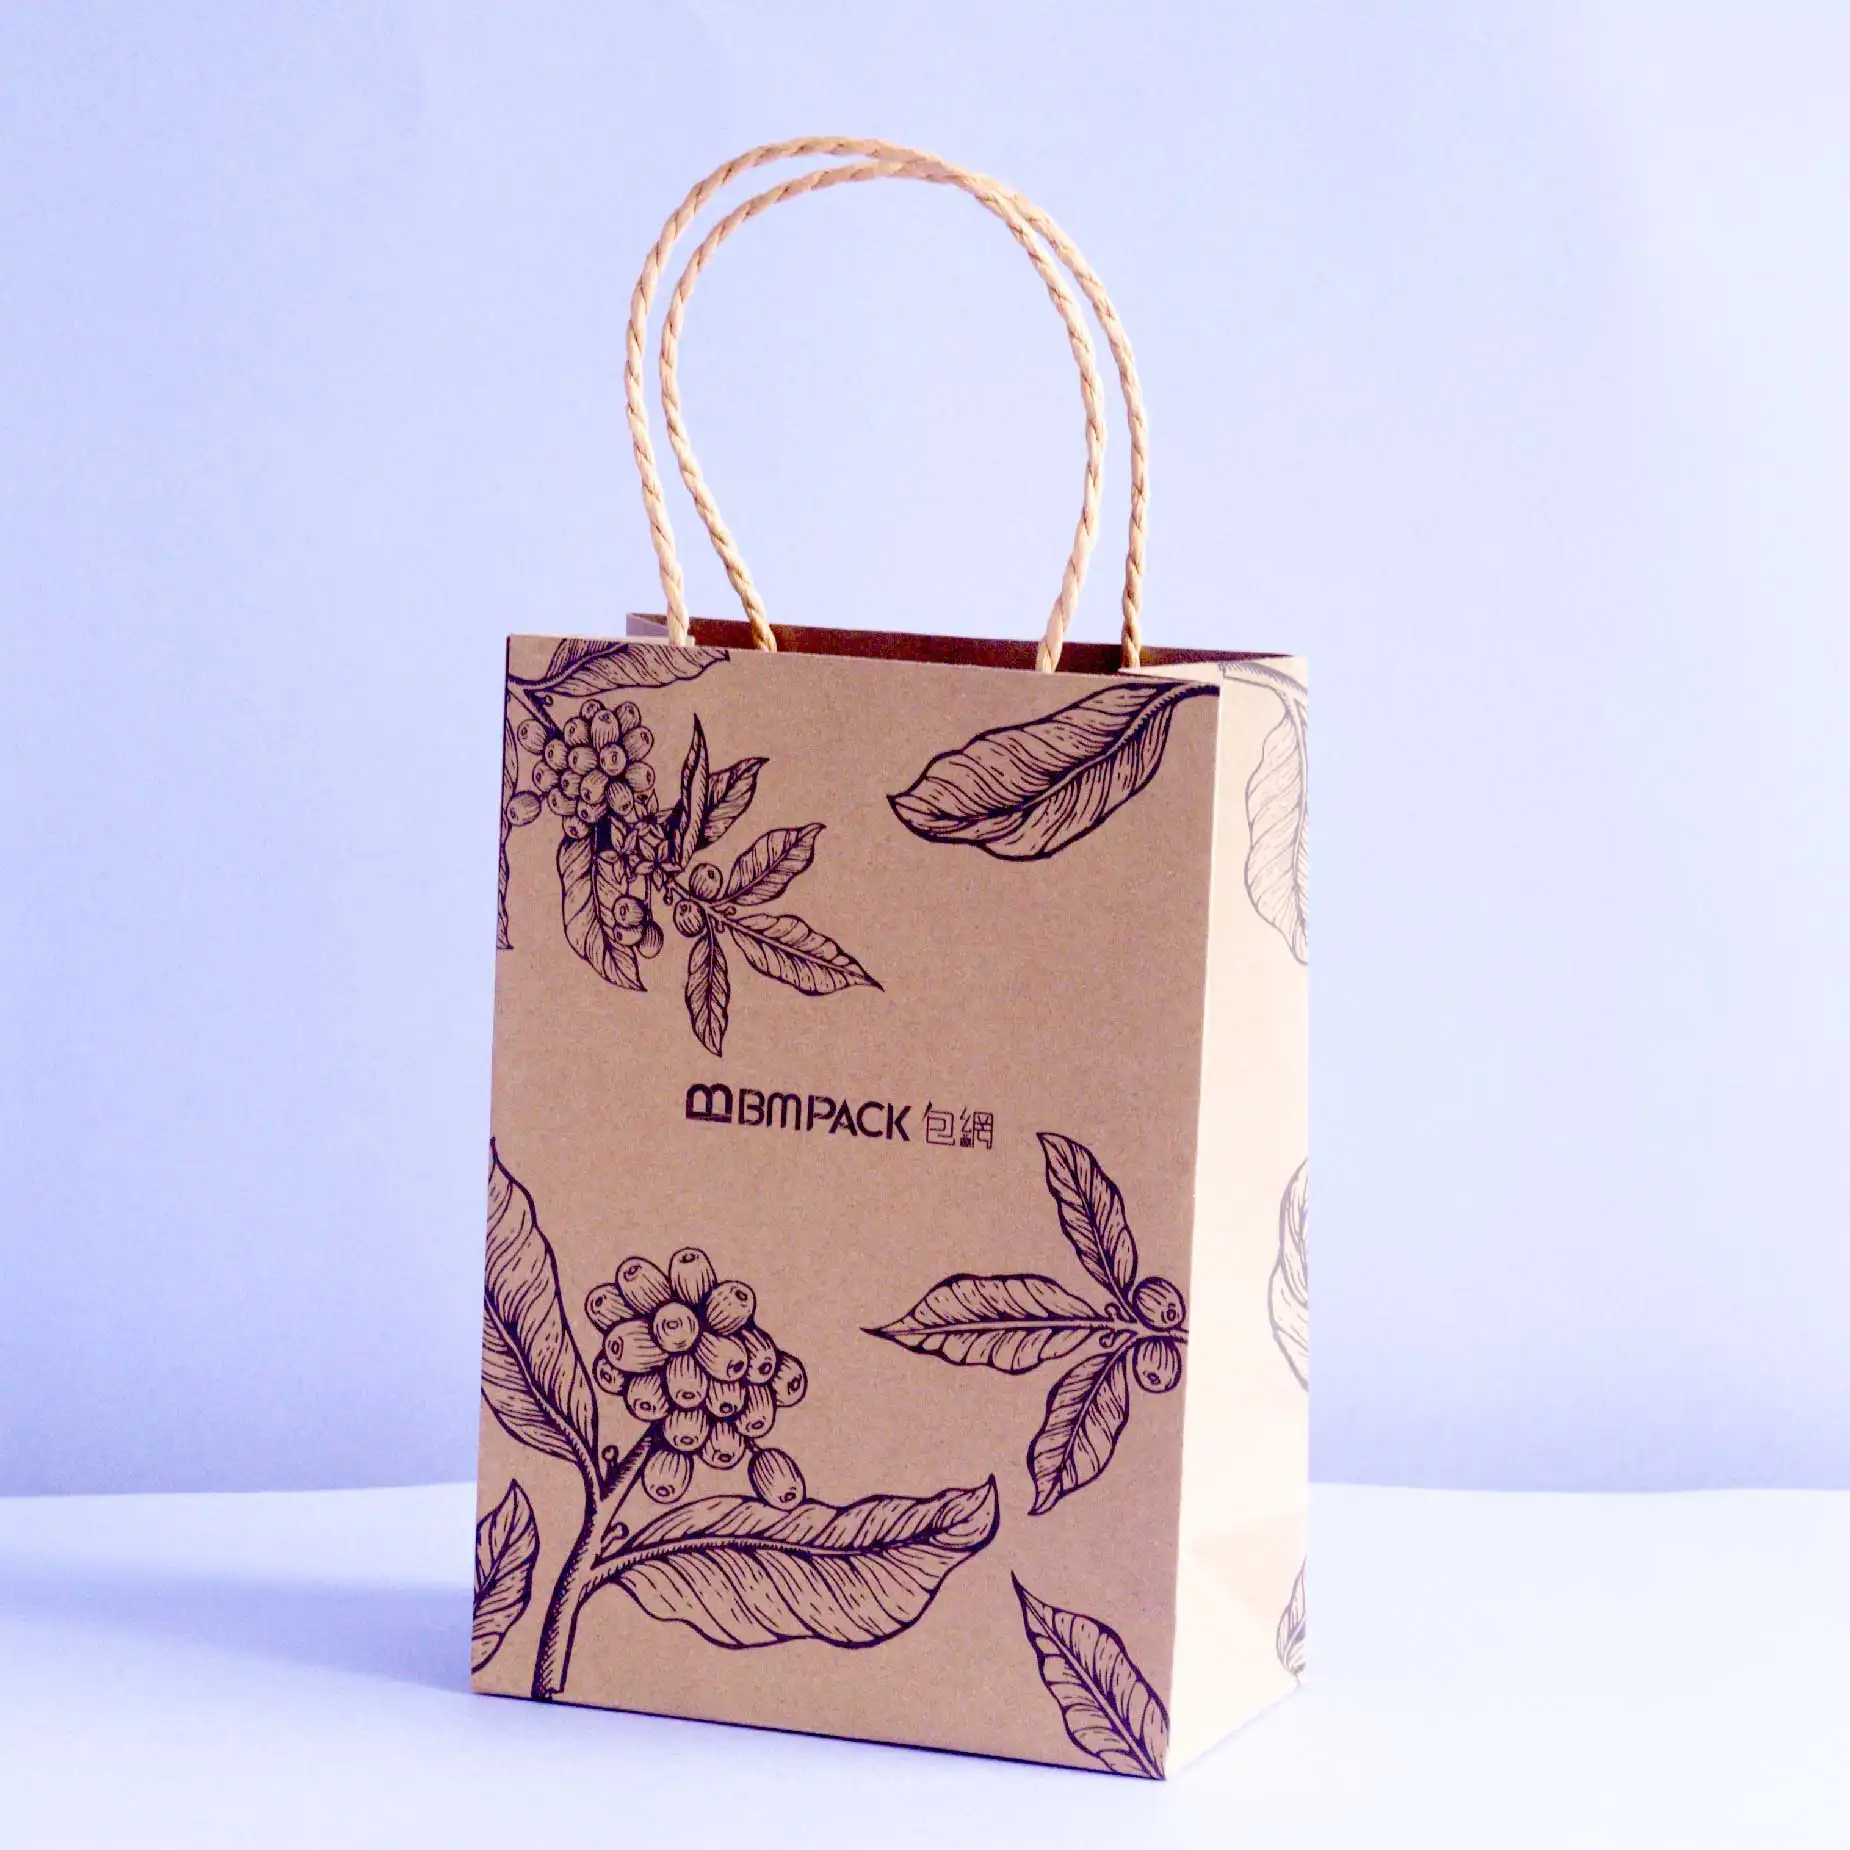 產品樣版2: 一个牛皮紙袋印一些花紋及有“BM Pack包網”名稱